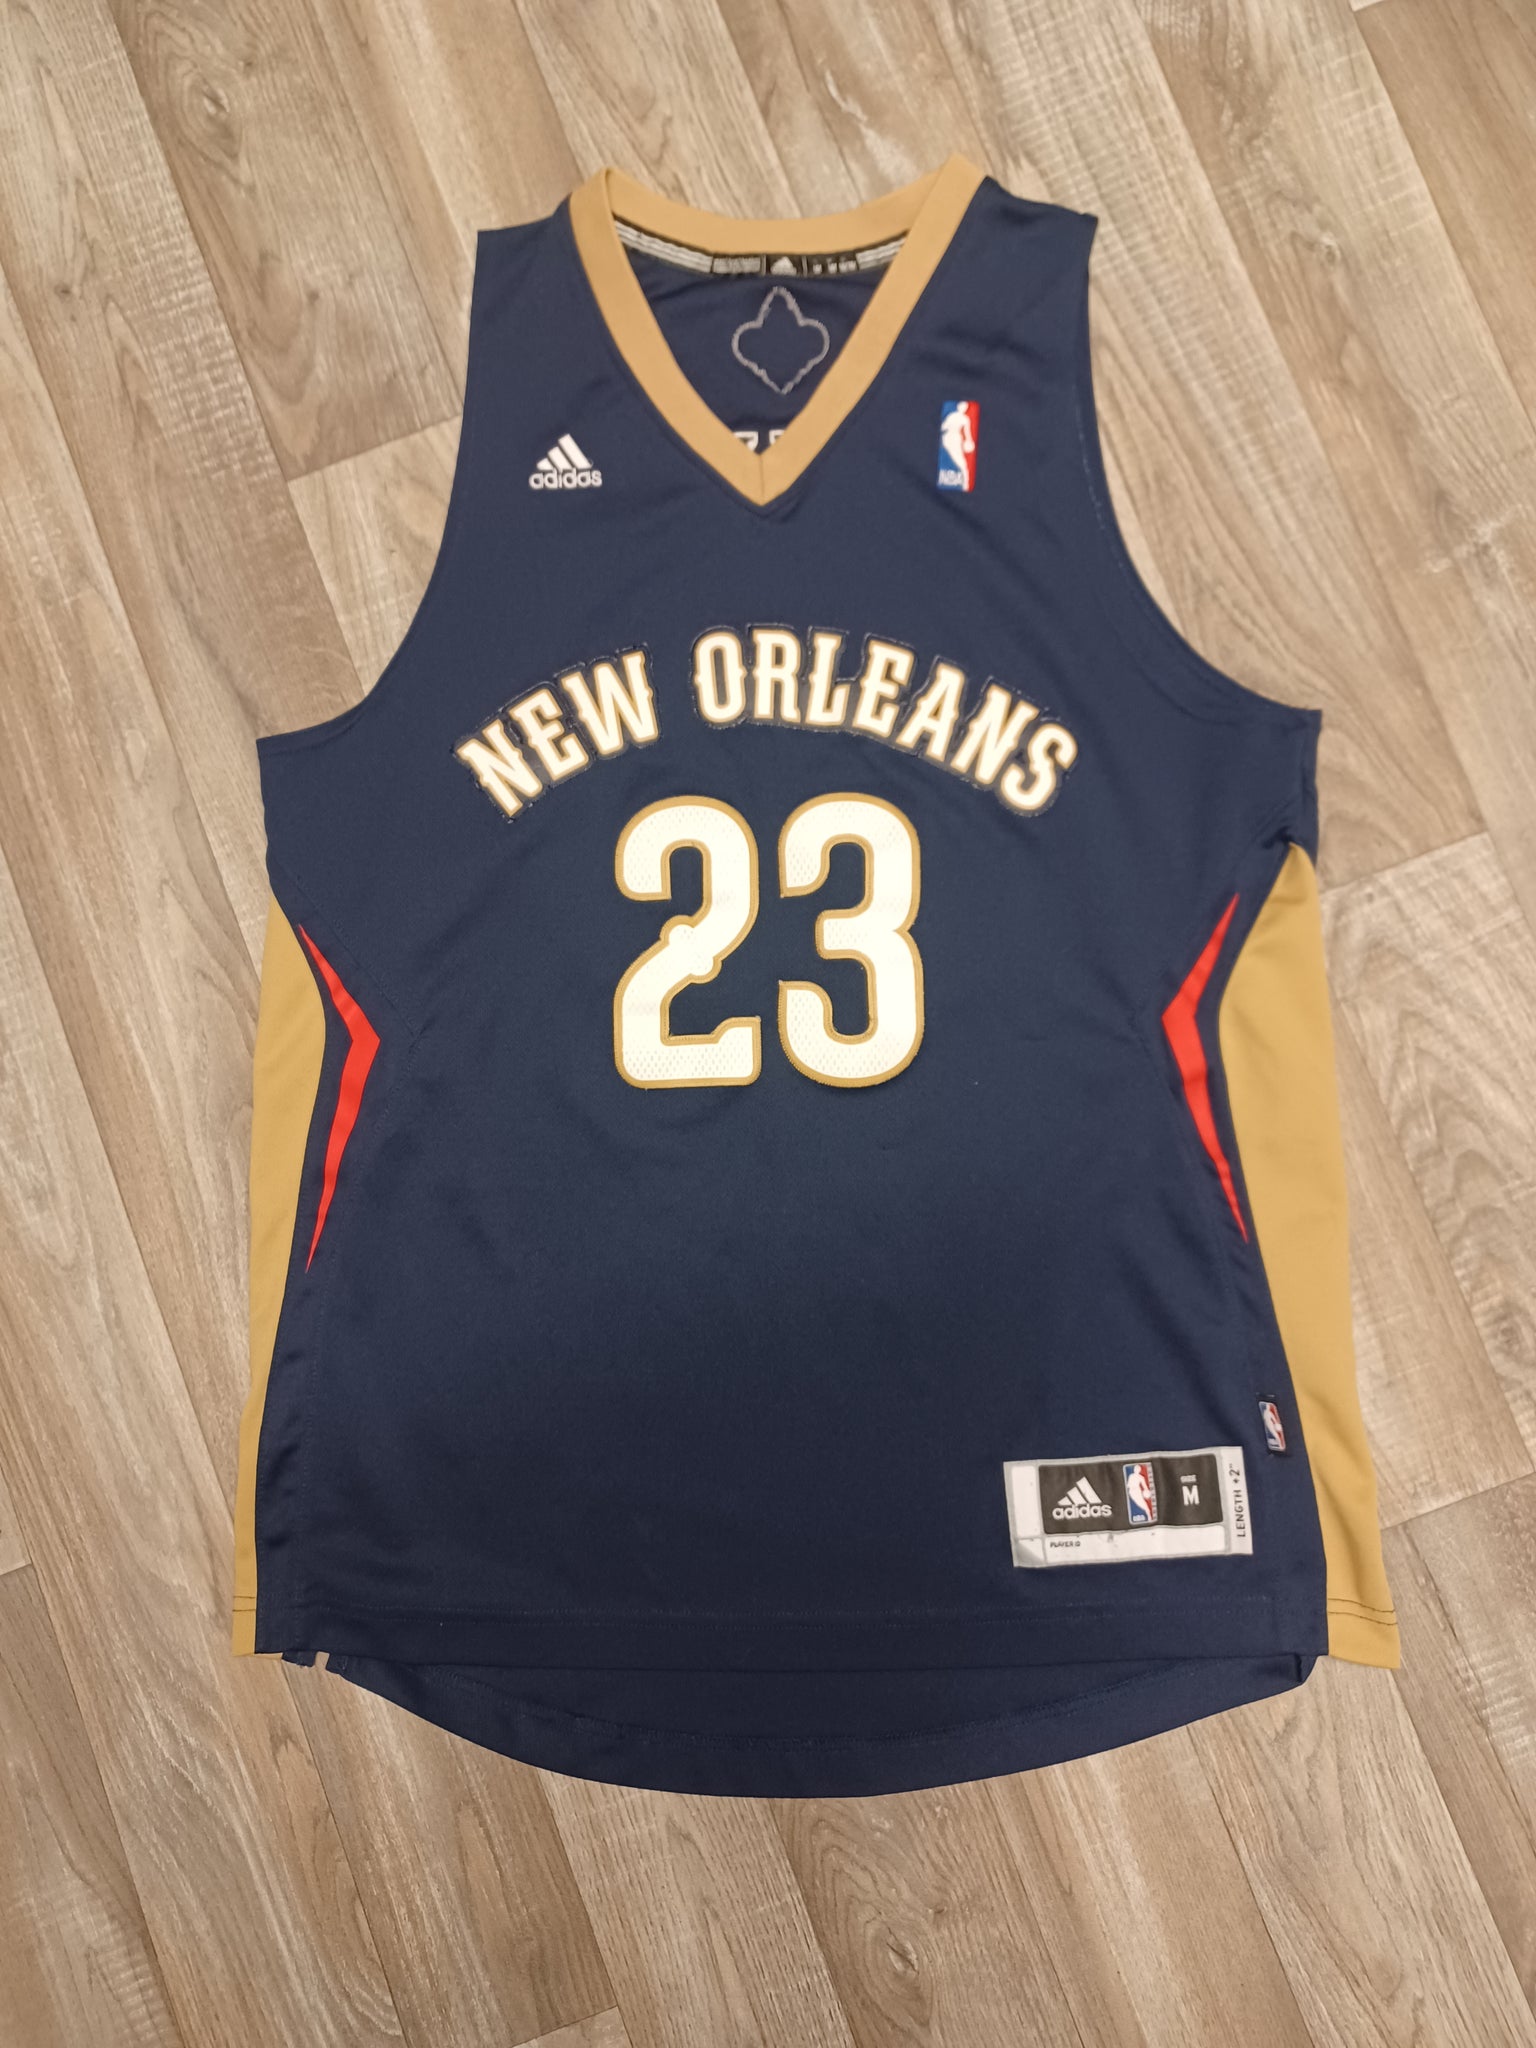 New Orleans Pelicans Jerseys & Teamwear, NBA Merch